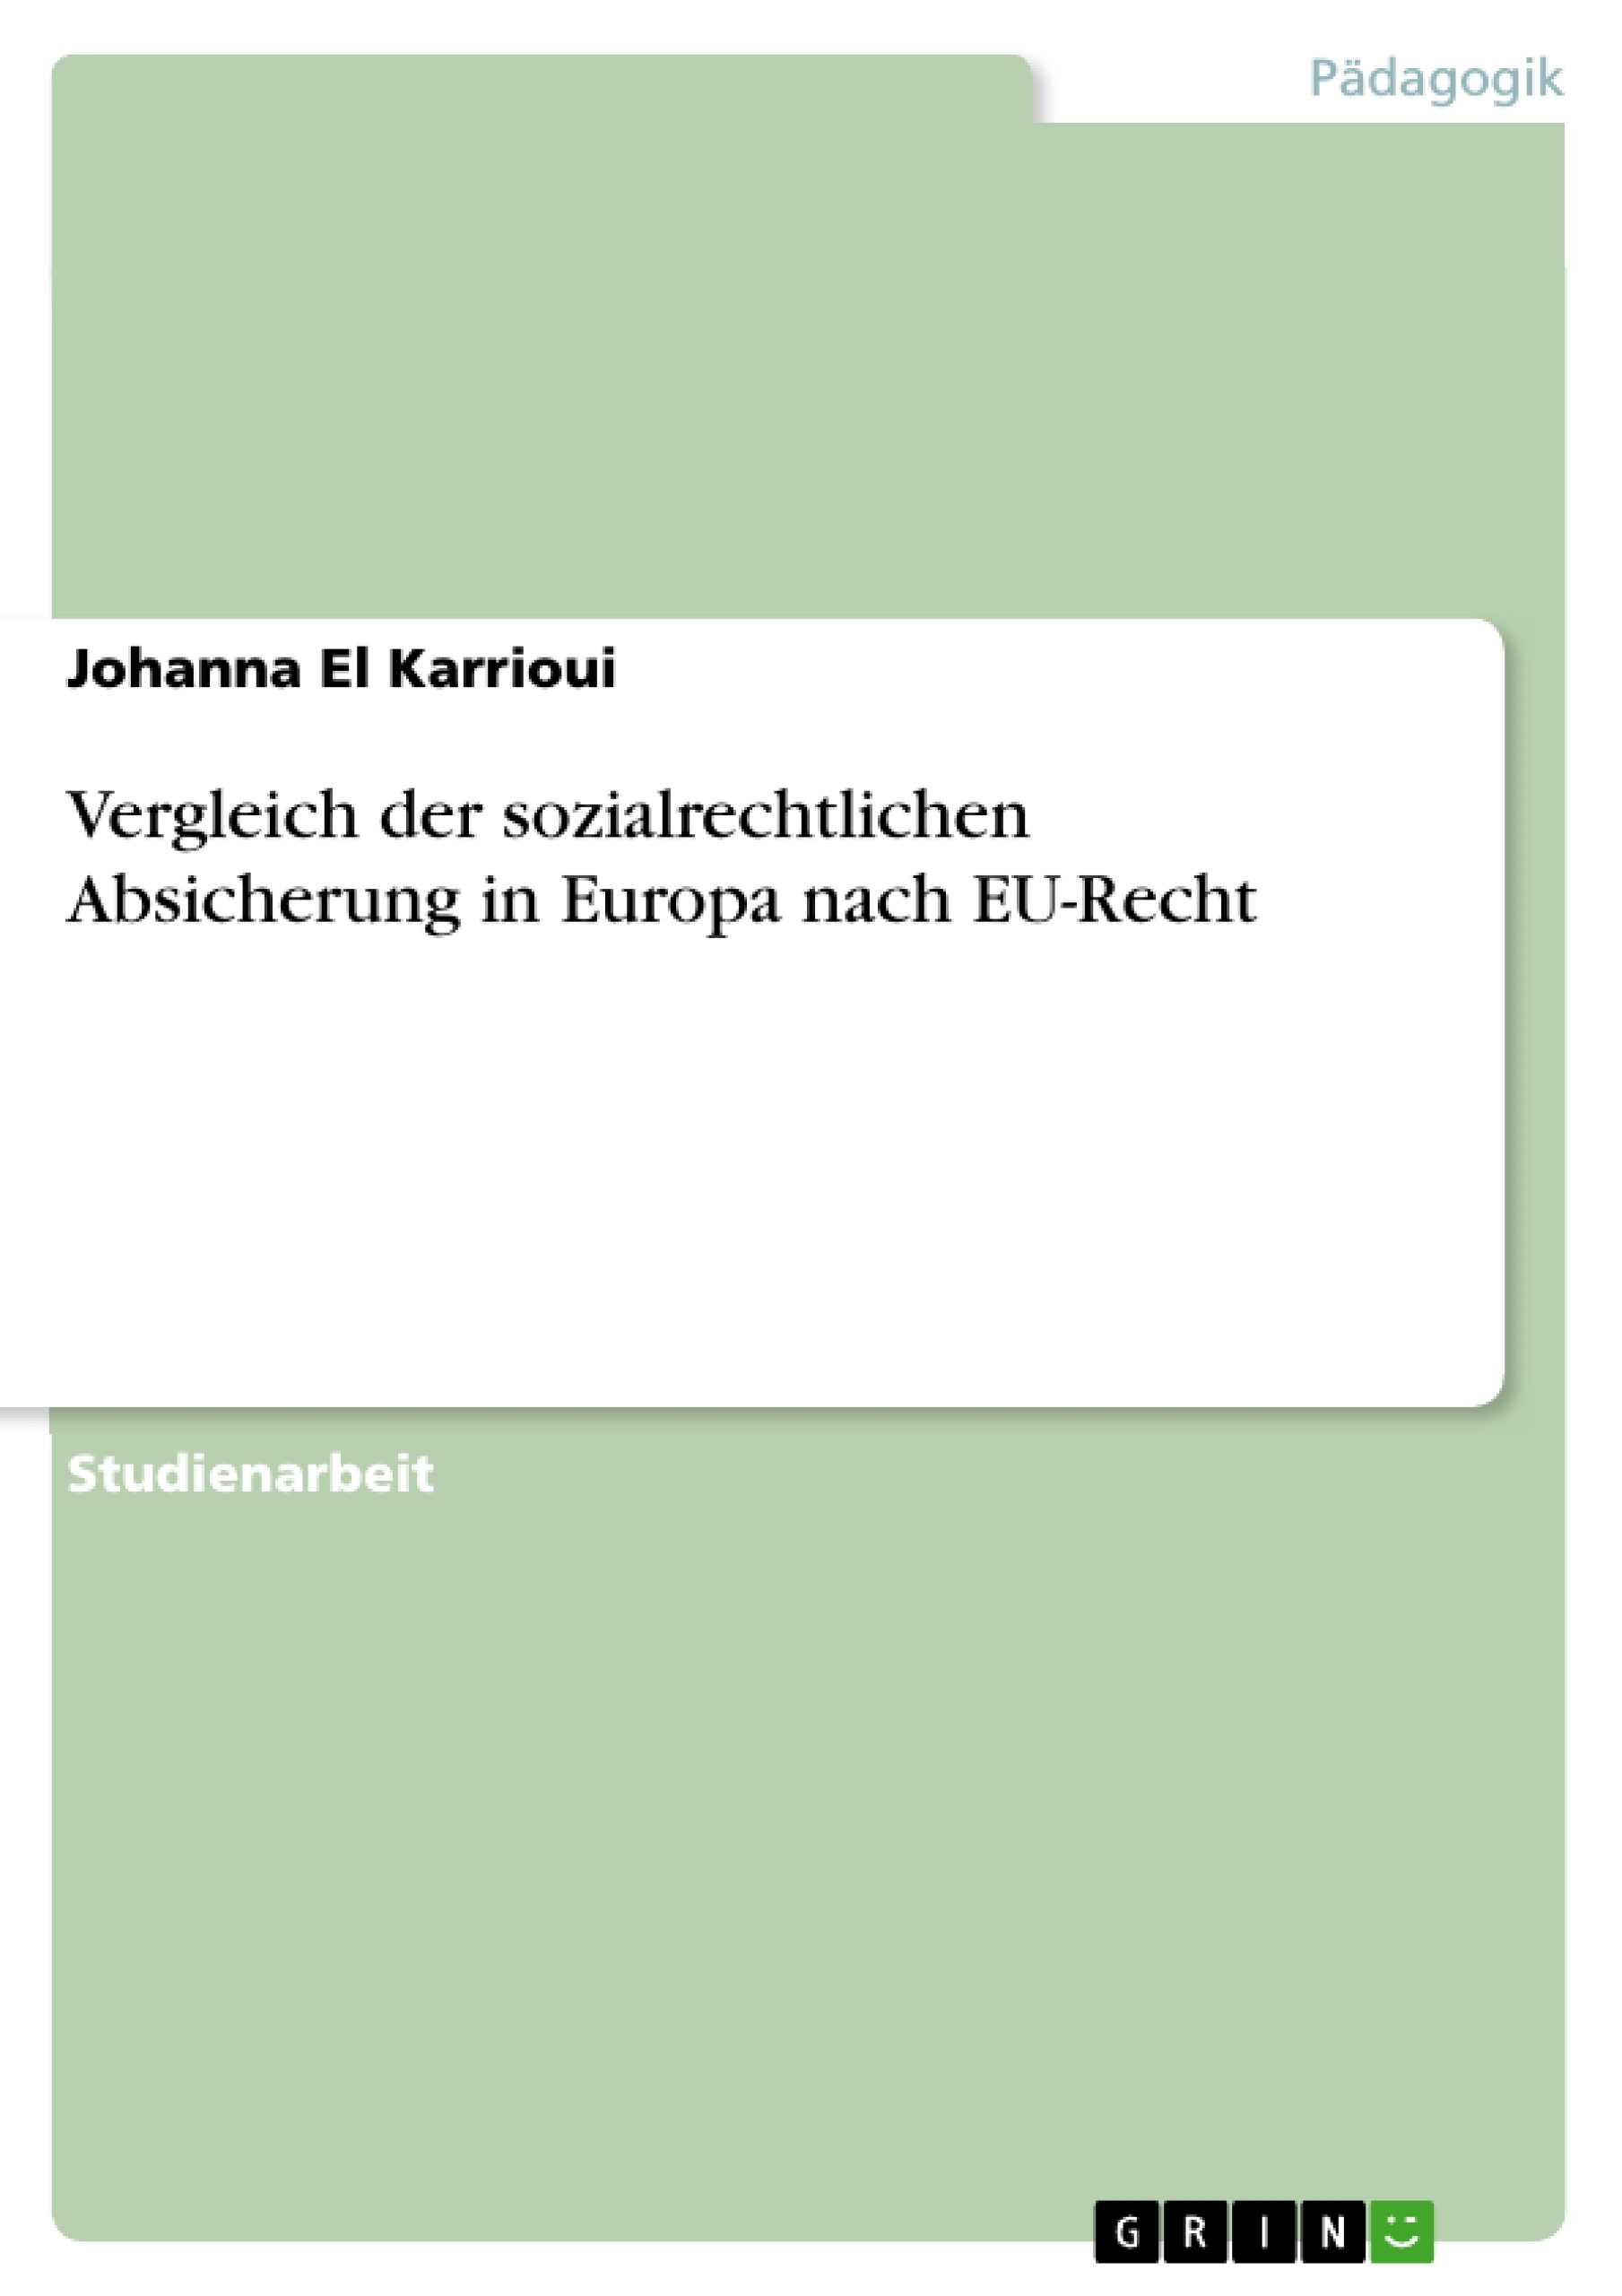 Título: Vergleich der sozialrechtlichen Absicherung in Europa nach EU-Recht